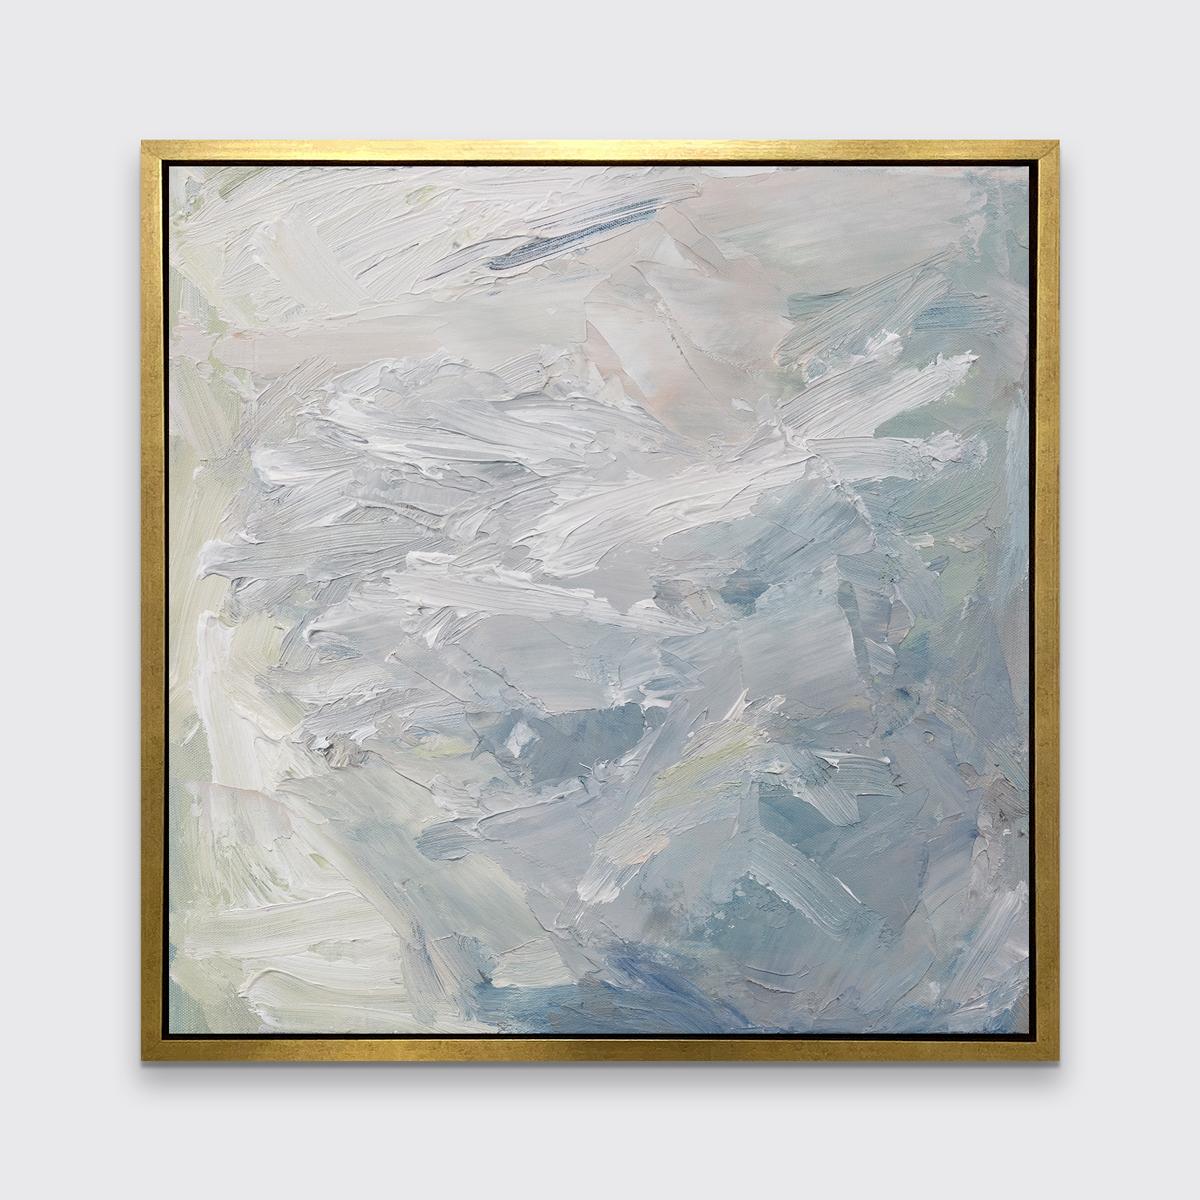 Cette estampe abstraite en édition limitée de l'artiste contemporaine Teodora Guererra présente une palette froide de bleu, de blanc et de vert sourd, avec des traits énergiques tout au long de la composition. Ce tirage s'associe magnifiquement à